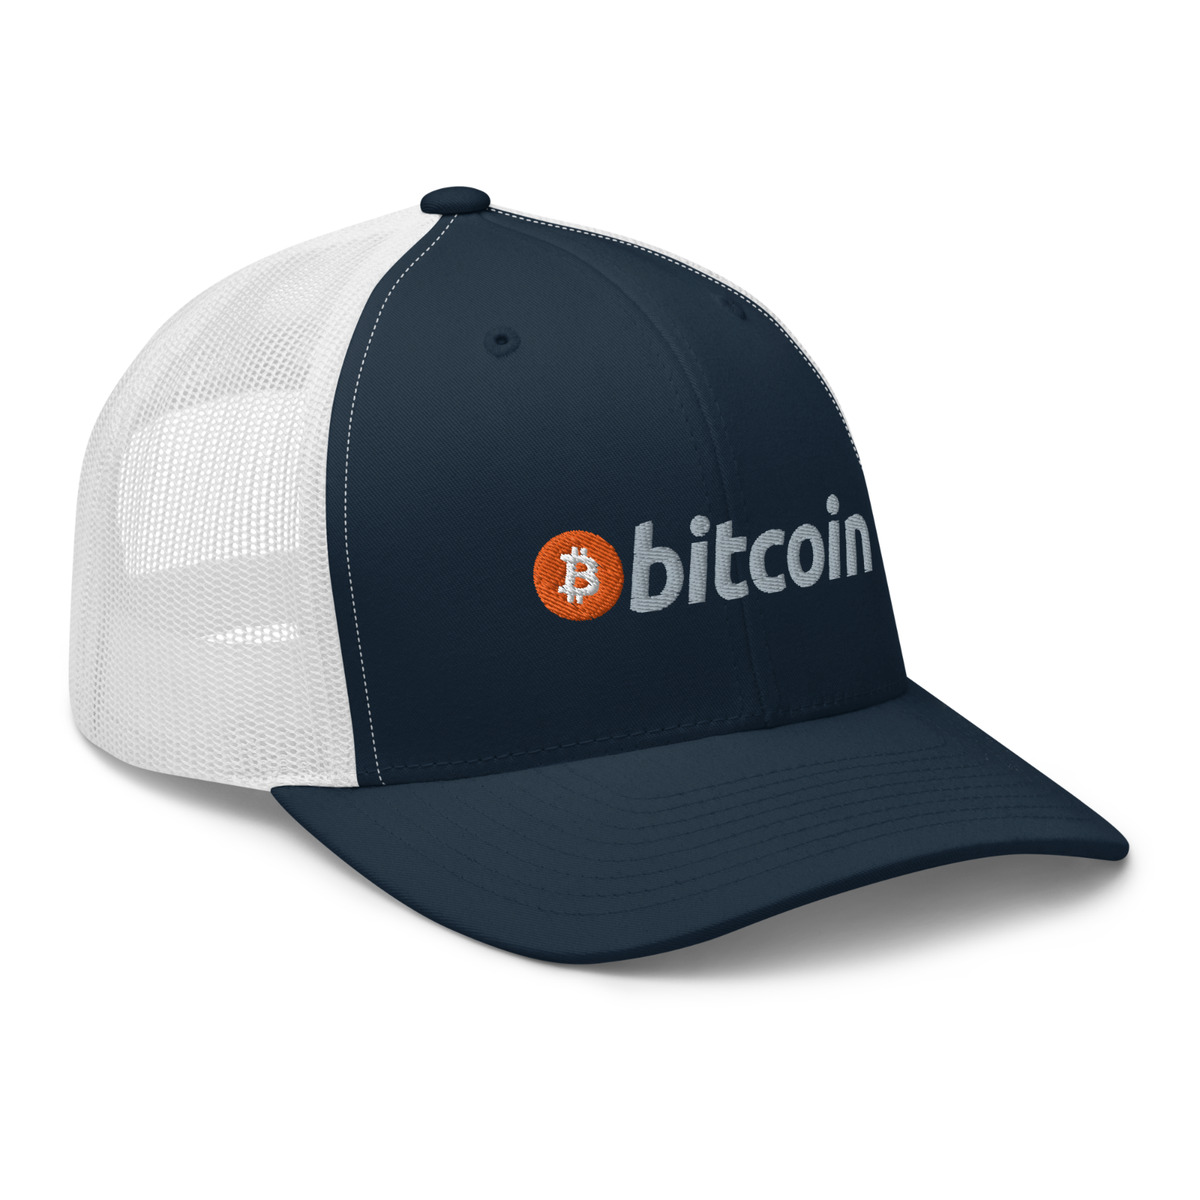 Bitcoin Snapback Cap | Bitcoin Hat | Bitcoin HODL Cap | Snapback, Snapback hats, Navy and green